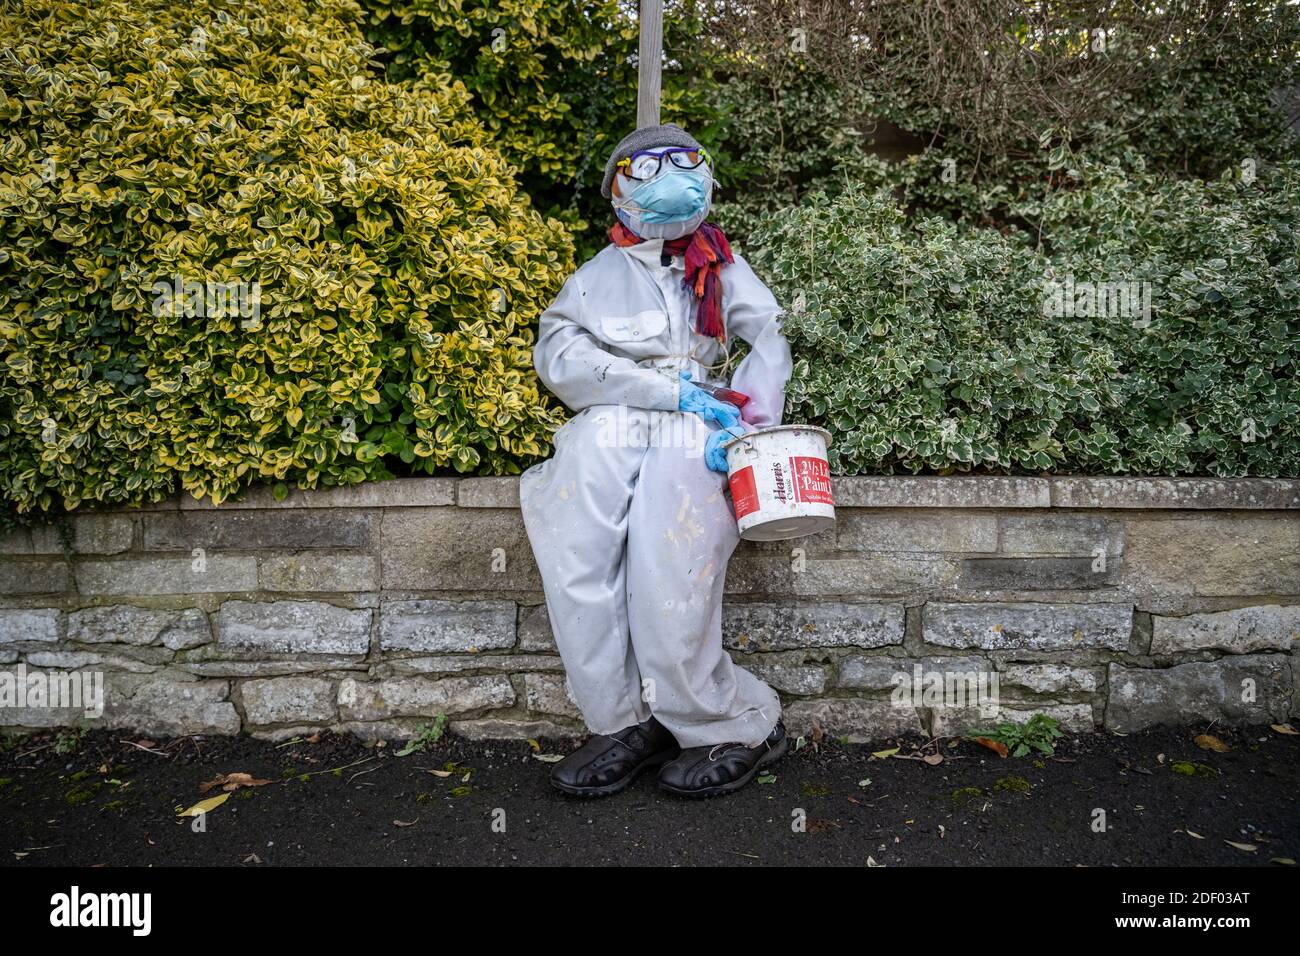 Coronavirus: Lockdown Vogelscheuche Charaktere bringen einige lokale hausgemachte Humor in die Stadt Marston Magna in Somerset, Großbritannien. Stockfoto